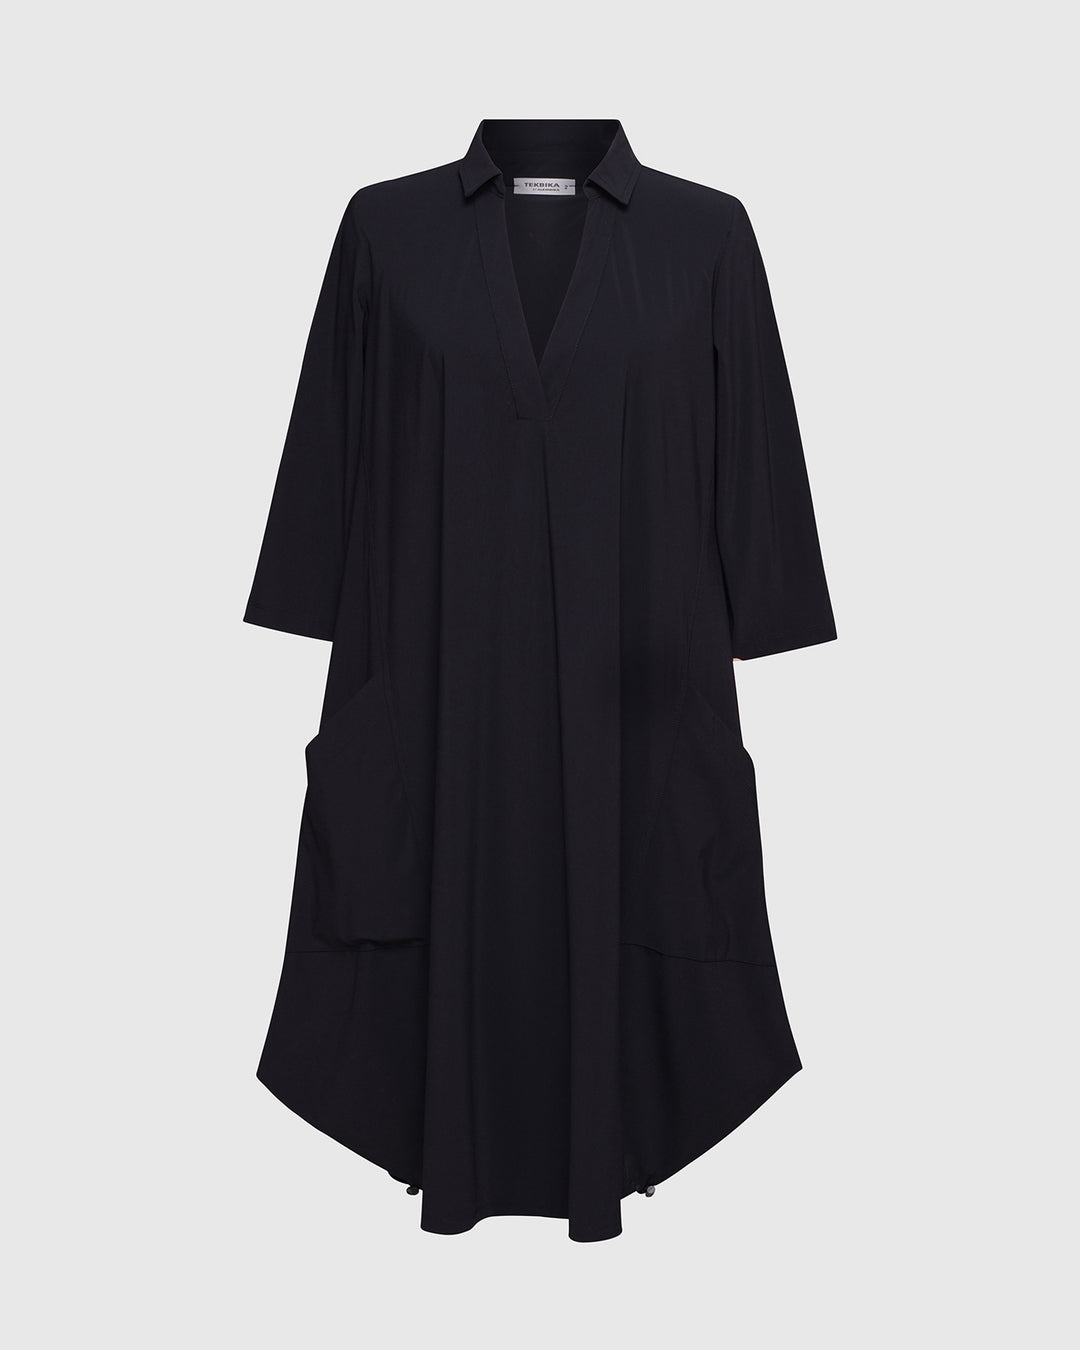 Tekbika Popover Dress, Black